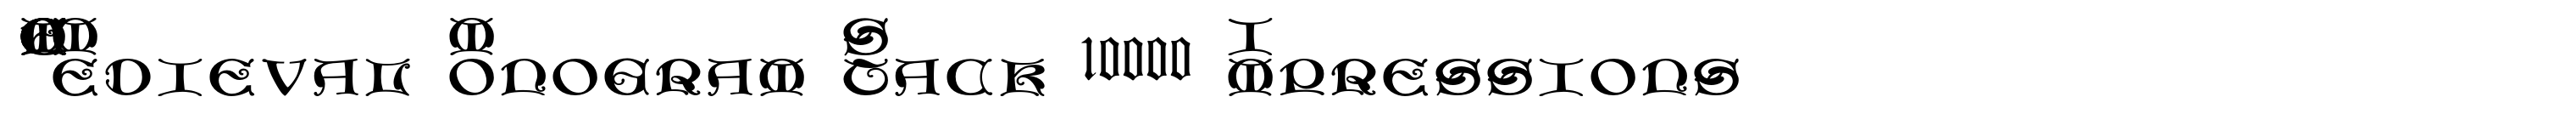 MFC Medieval Monogram Stack 10000 Impressions